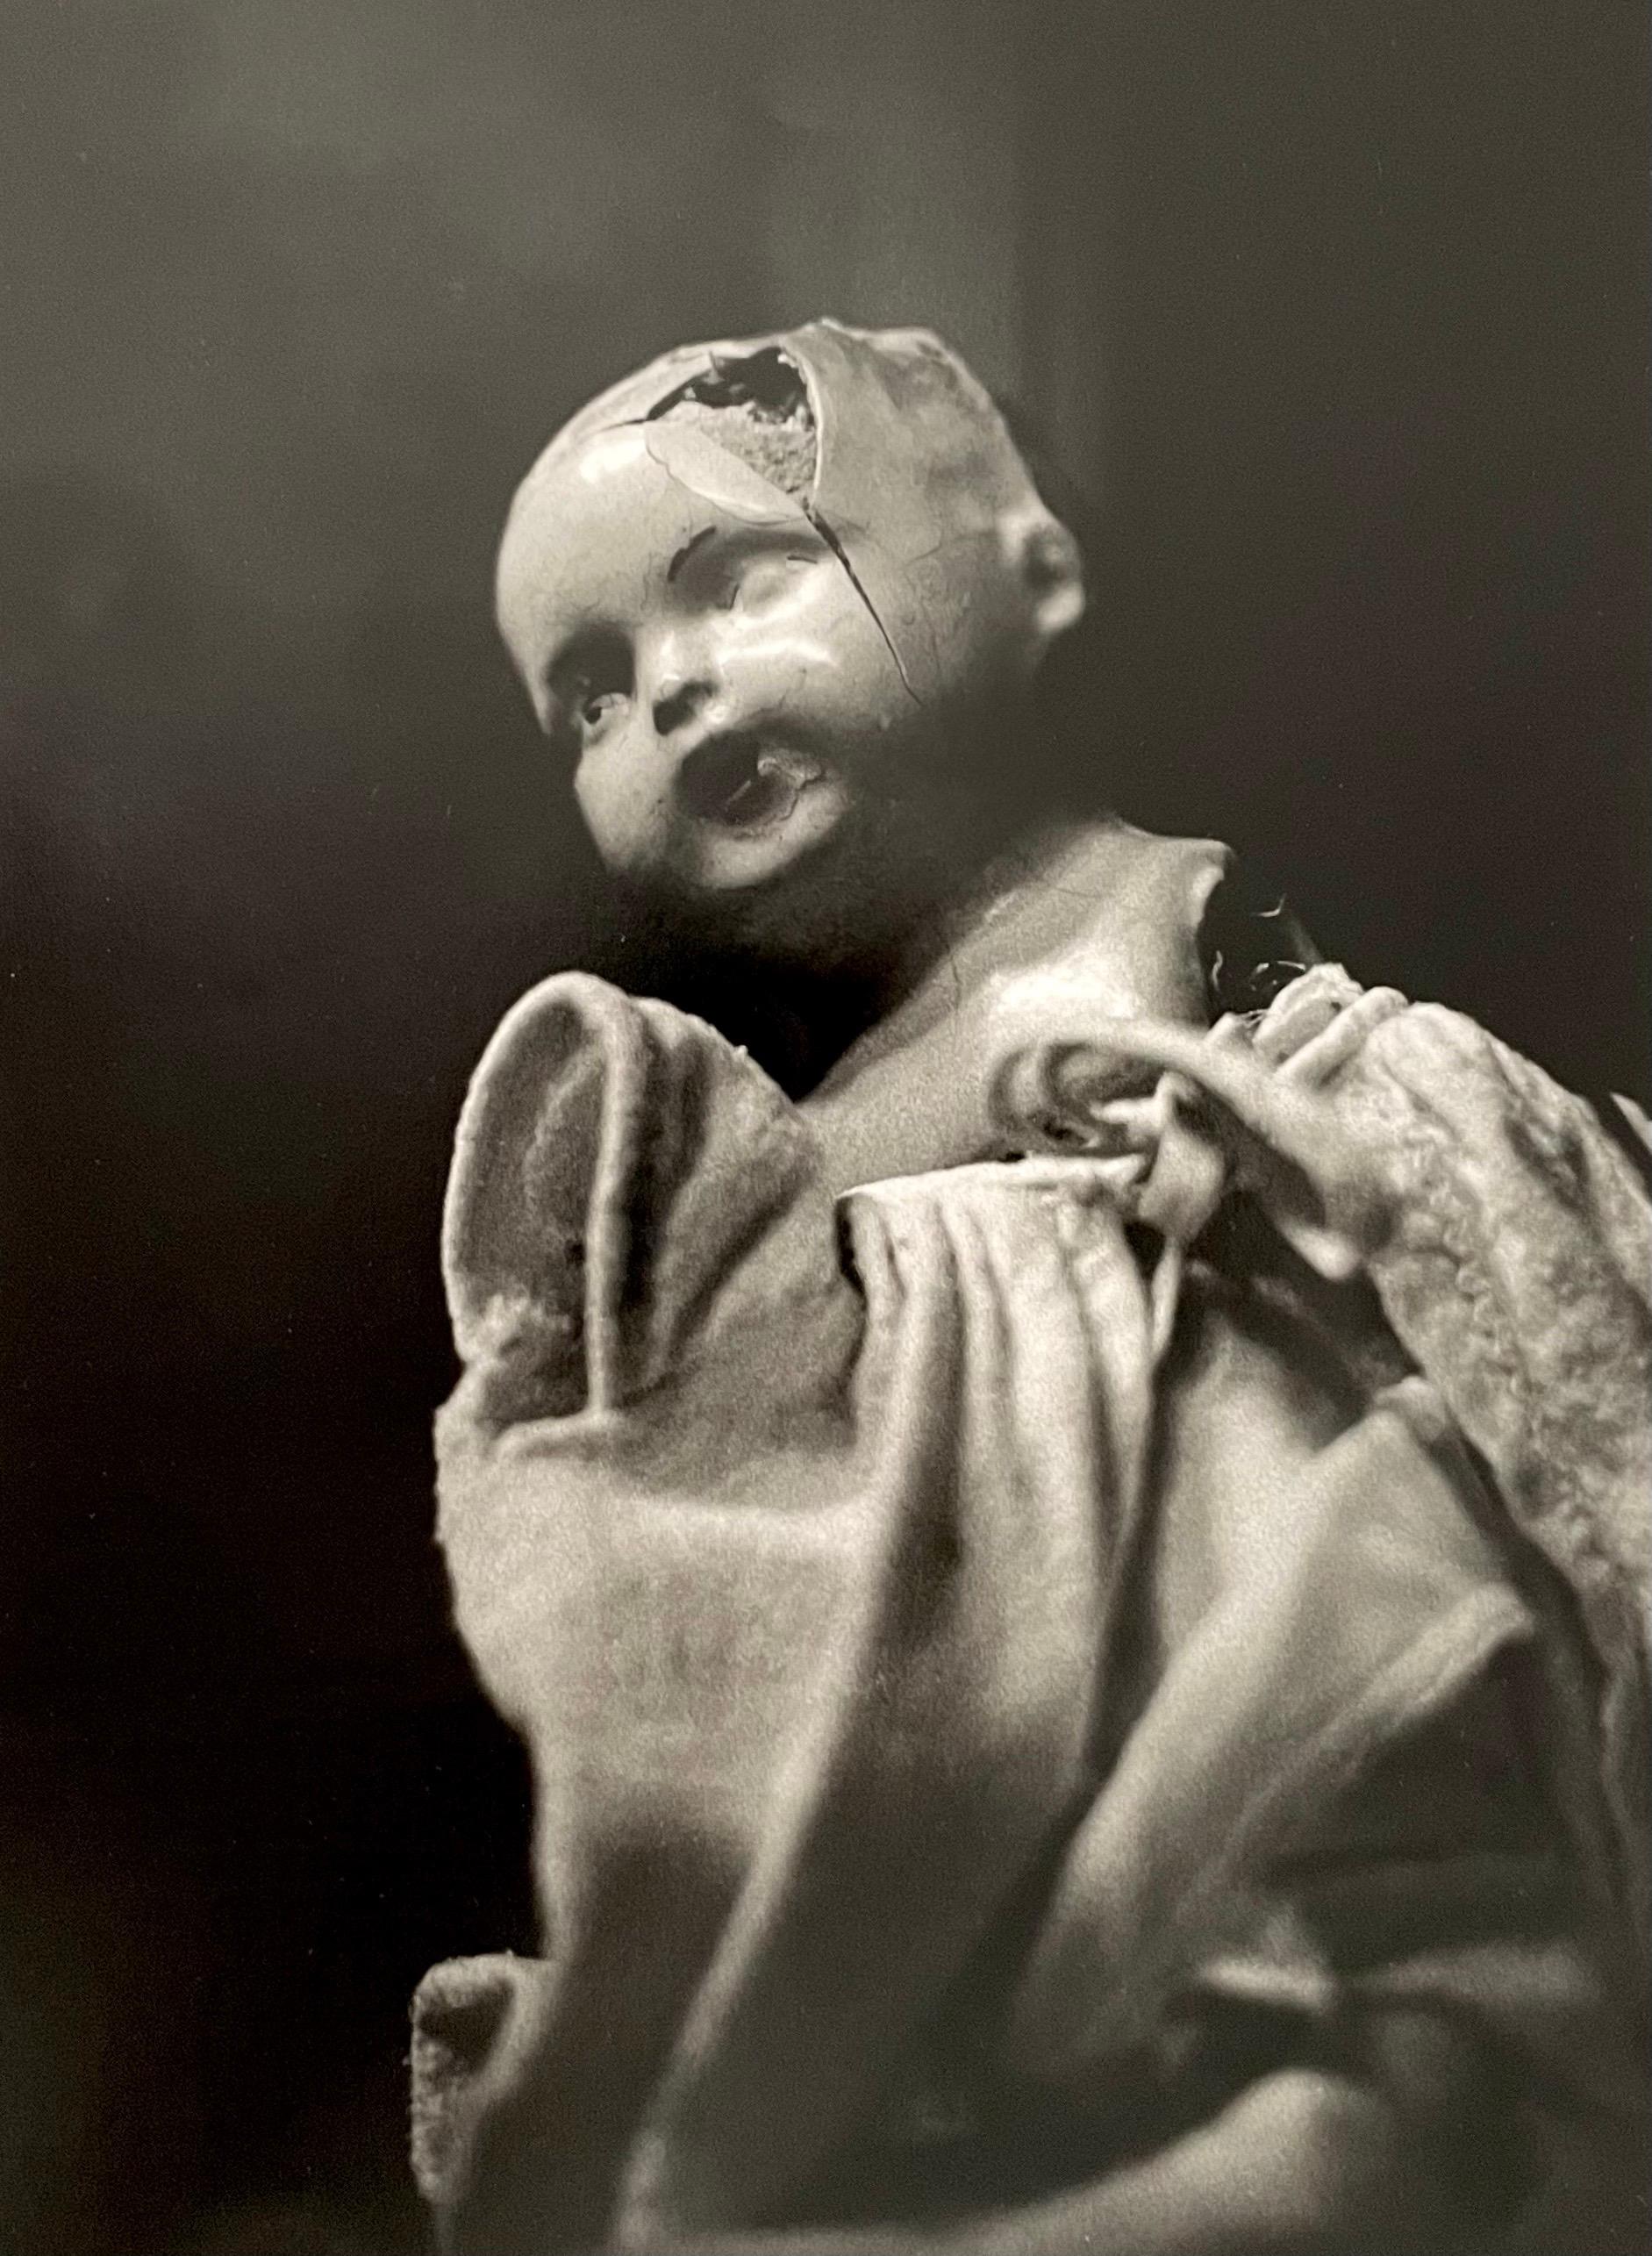 Surrealistische Vintage-Doll-Art-Fotografie in Silber und Gelatinesilber, Jazz-Fotograf 